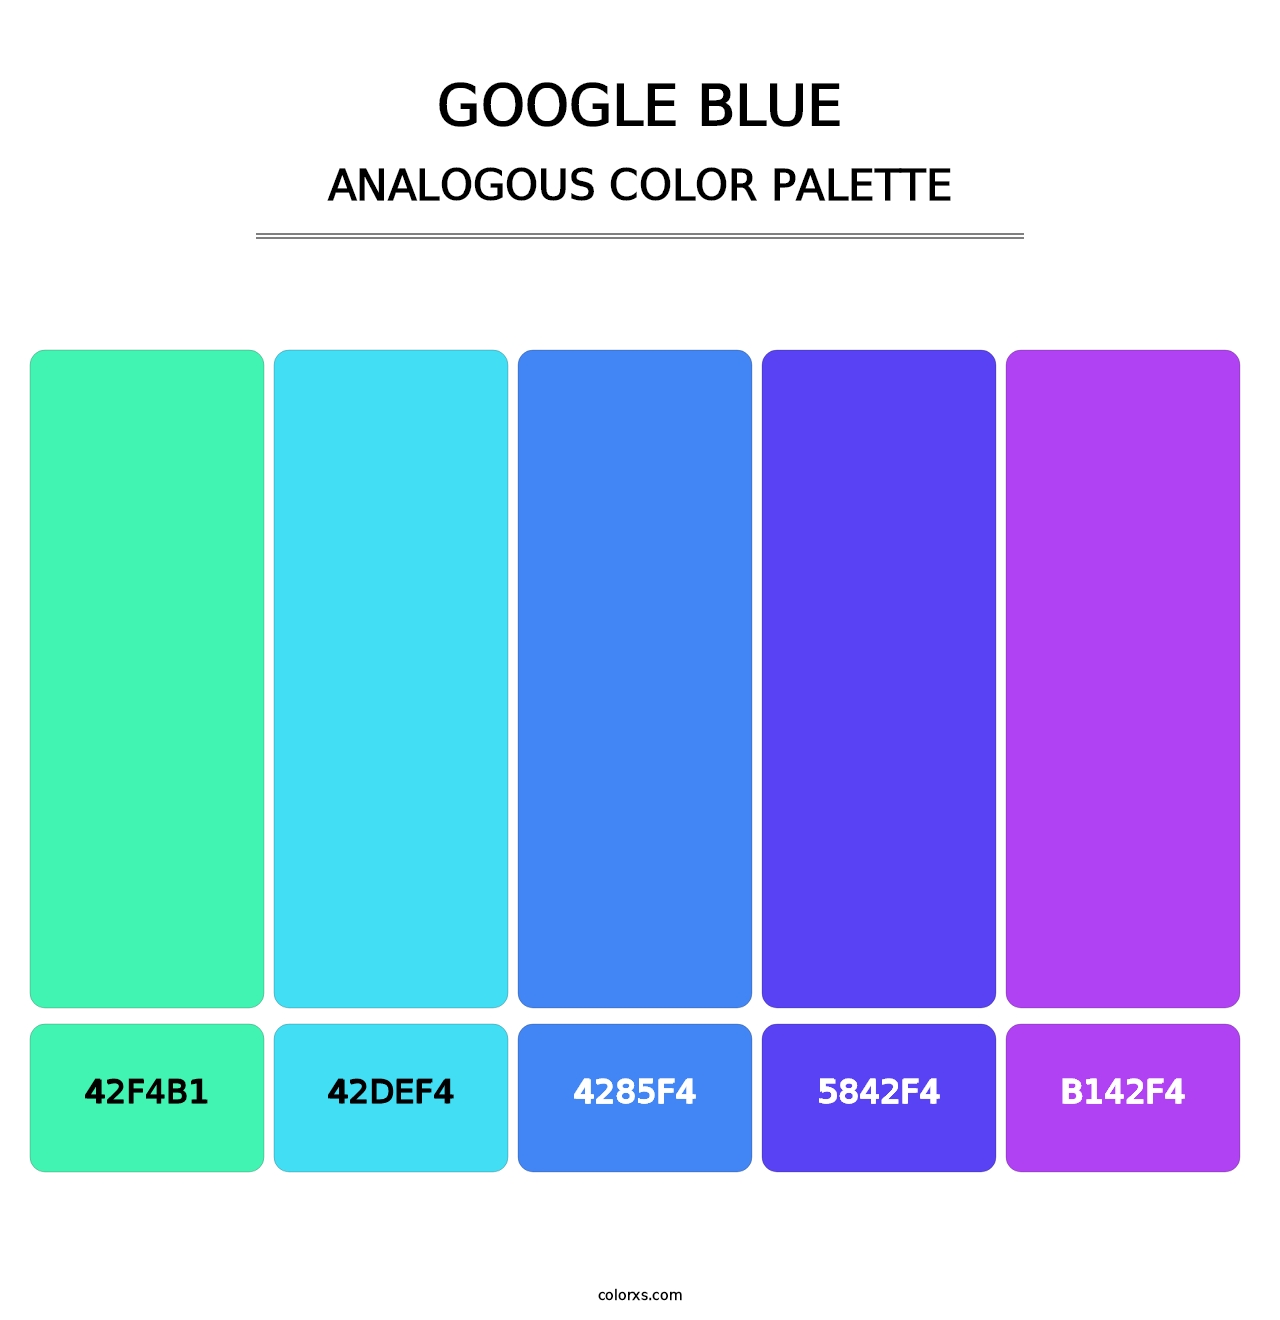 Google Blue - Analogous Color Palette